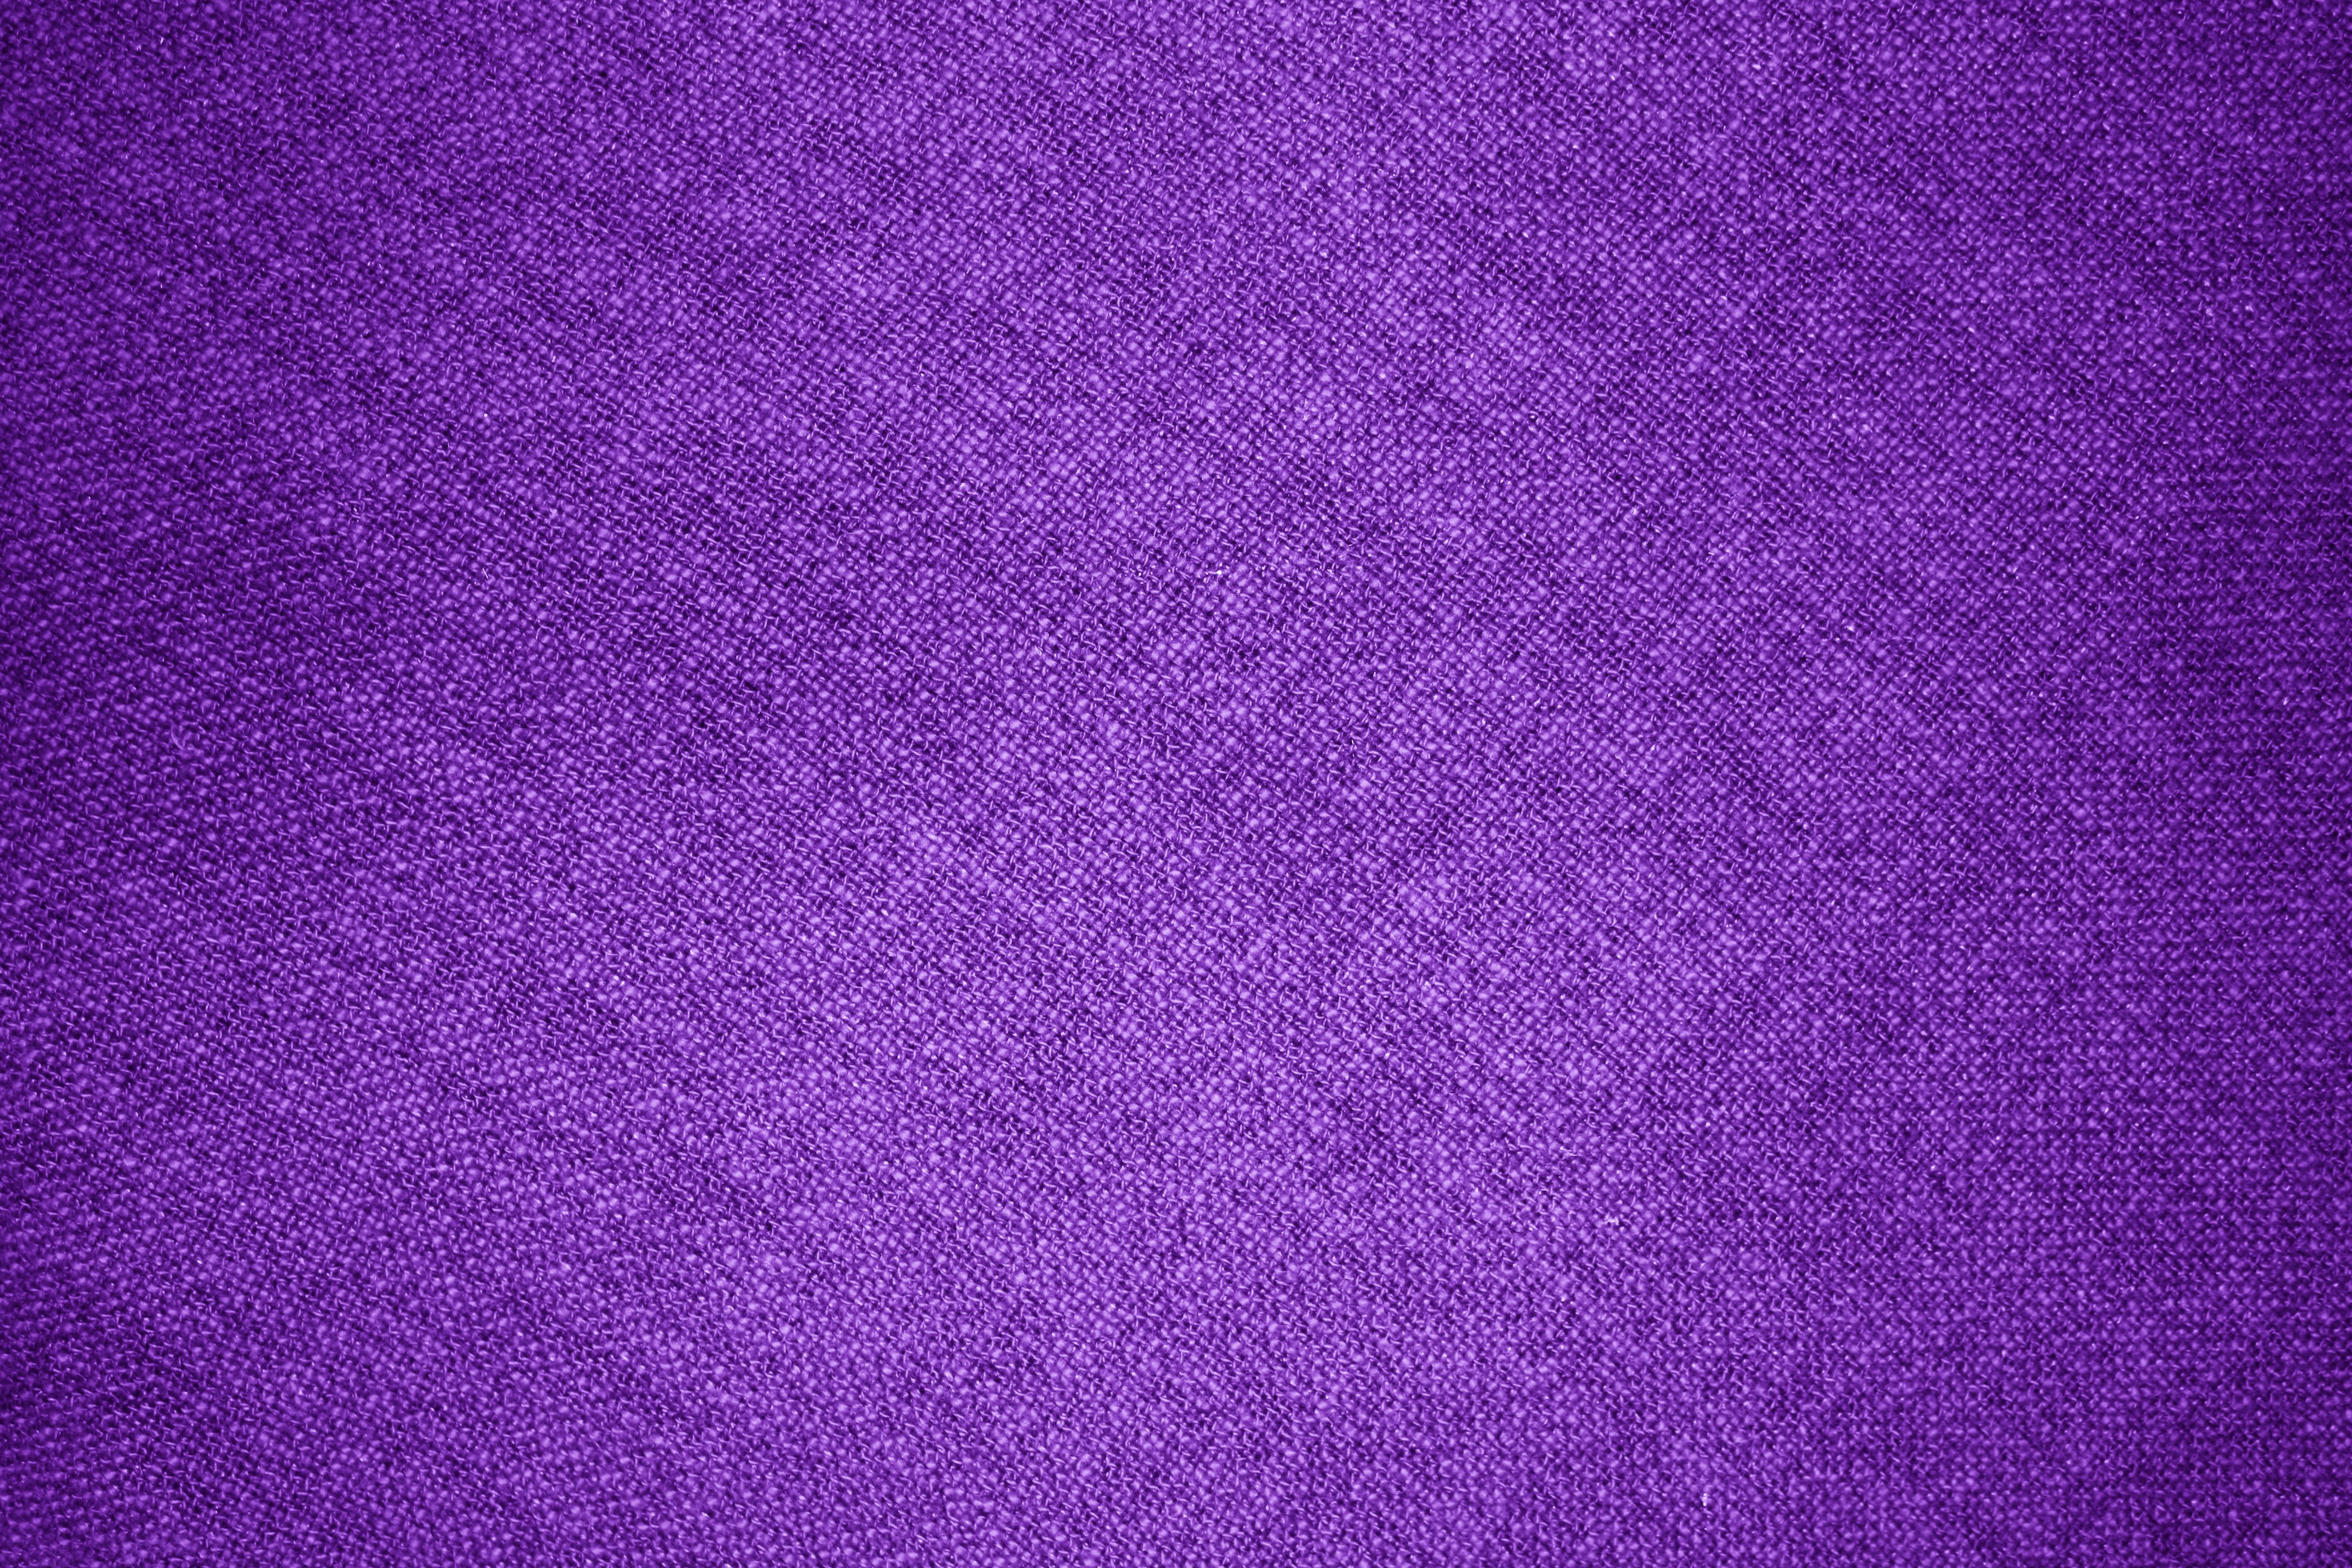 Purple Fabric Texture Picture | Free Photograph | Photos Public Domain